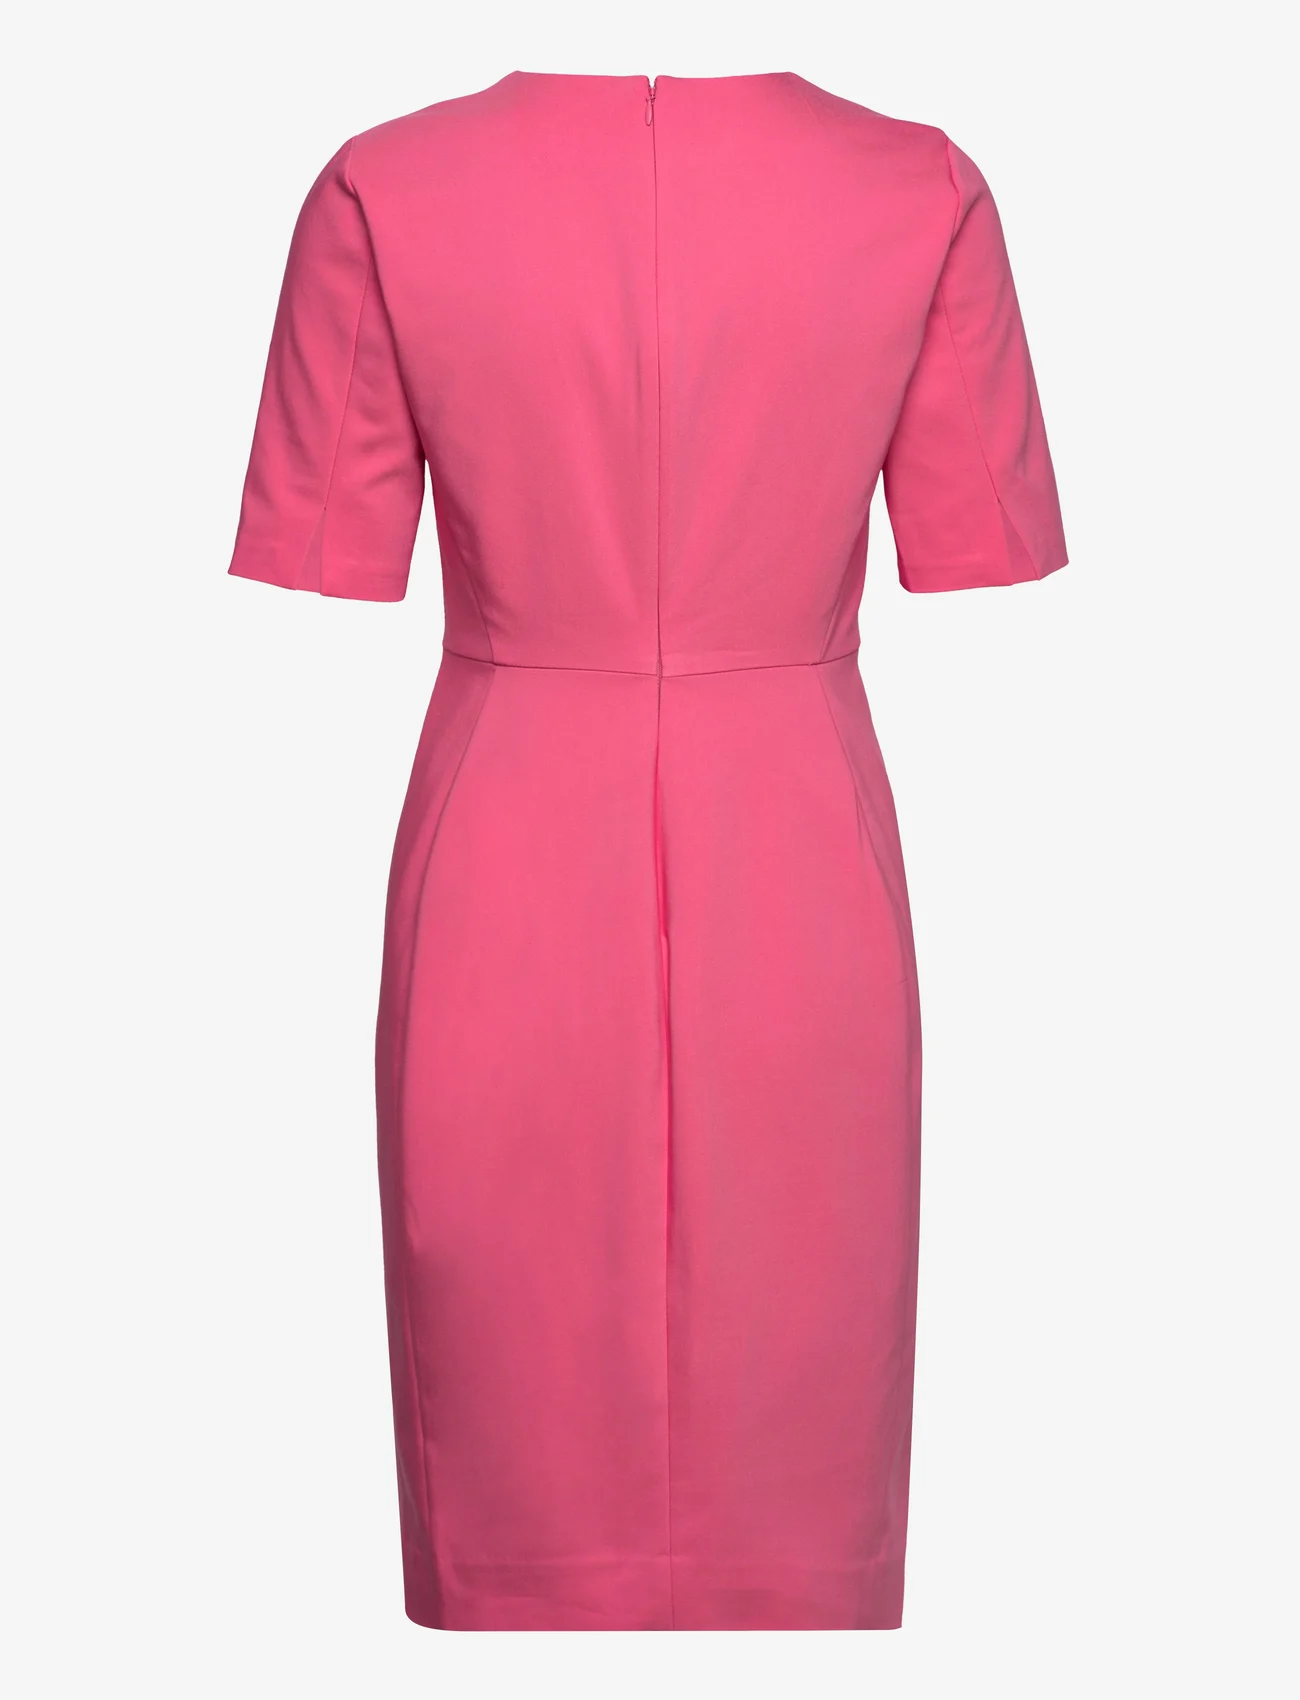 InWear - Zella Dress - odzież imprezowa w cenach outletowych - pink rose - 1